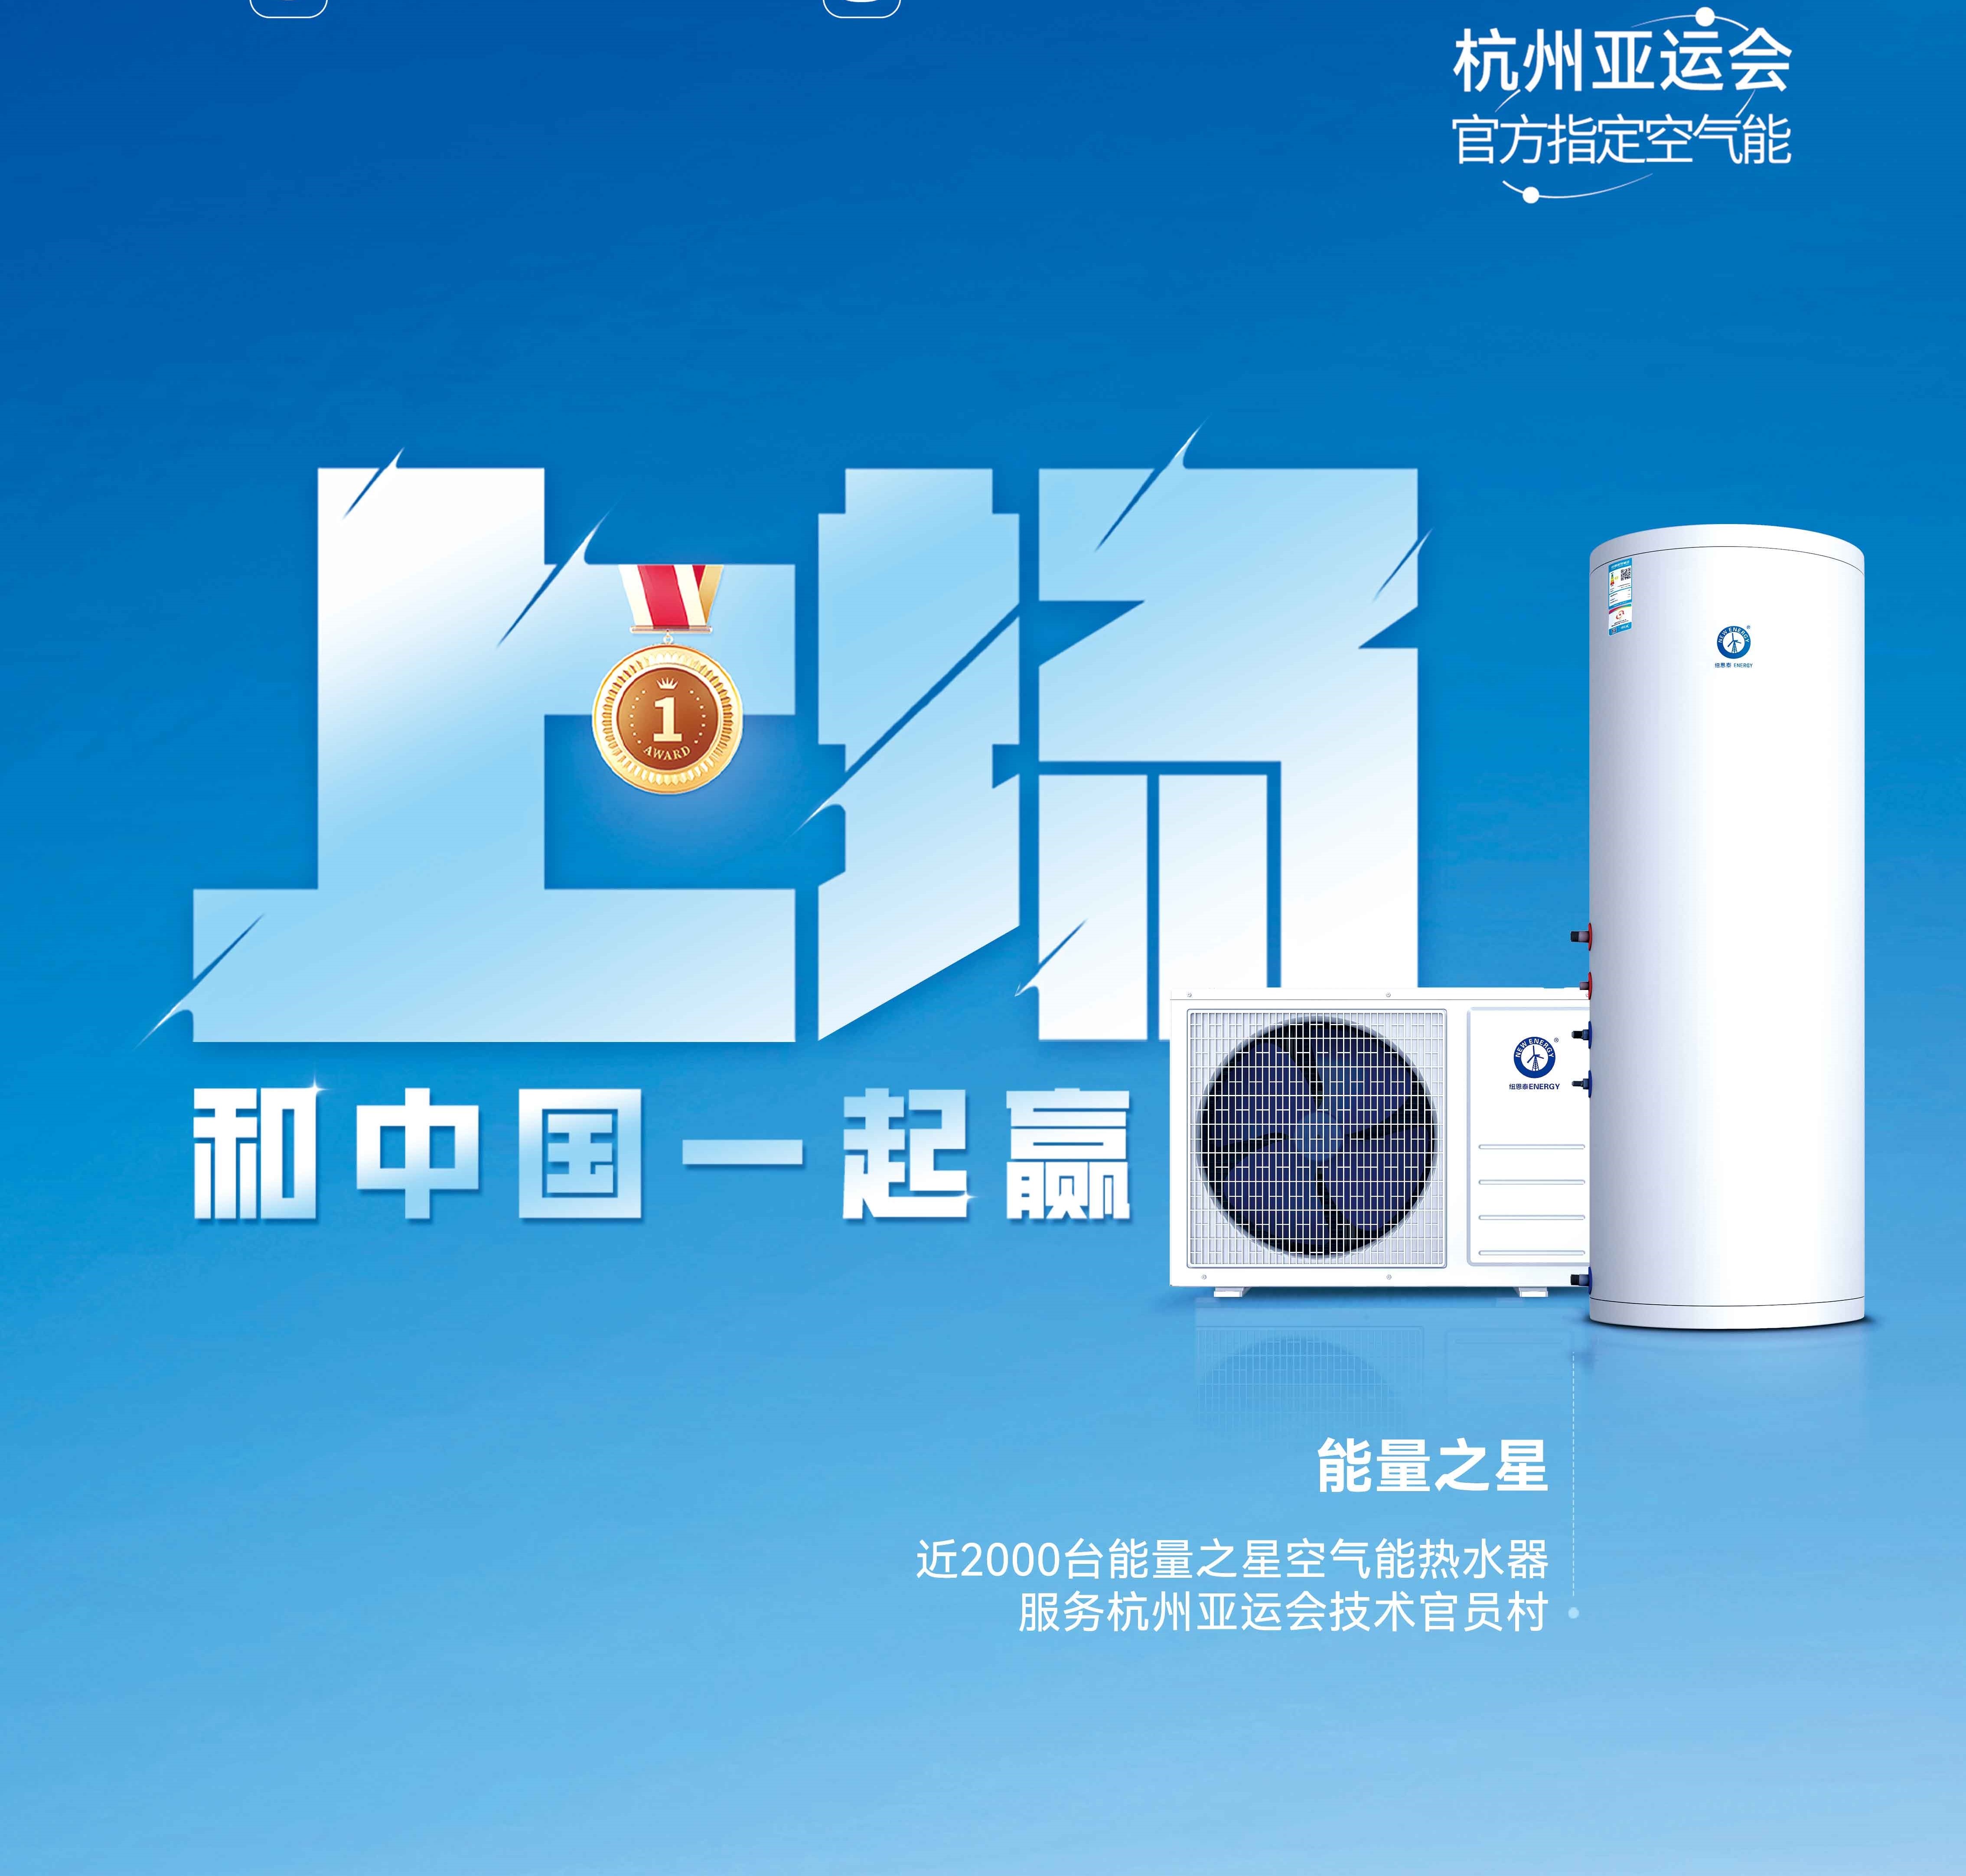 【尊龙凯时空气能热水器】杭州亚运会亚运手艺官员村的热水器用的是哪个供应商的产品？